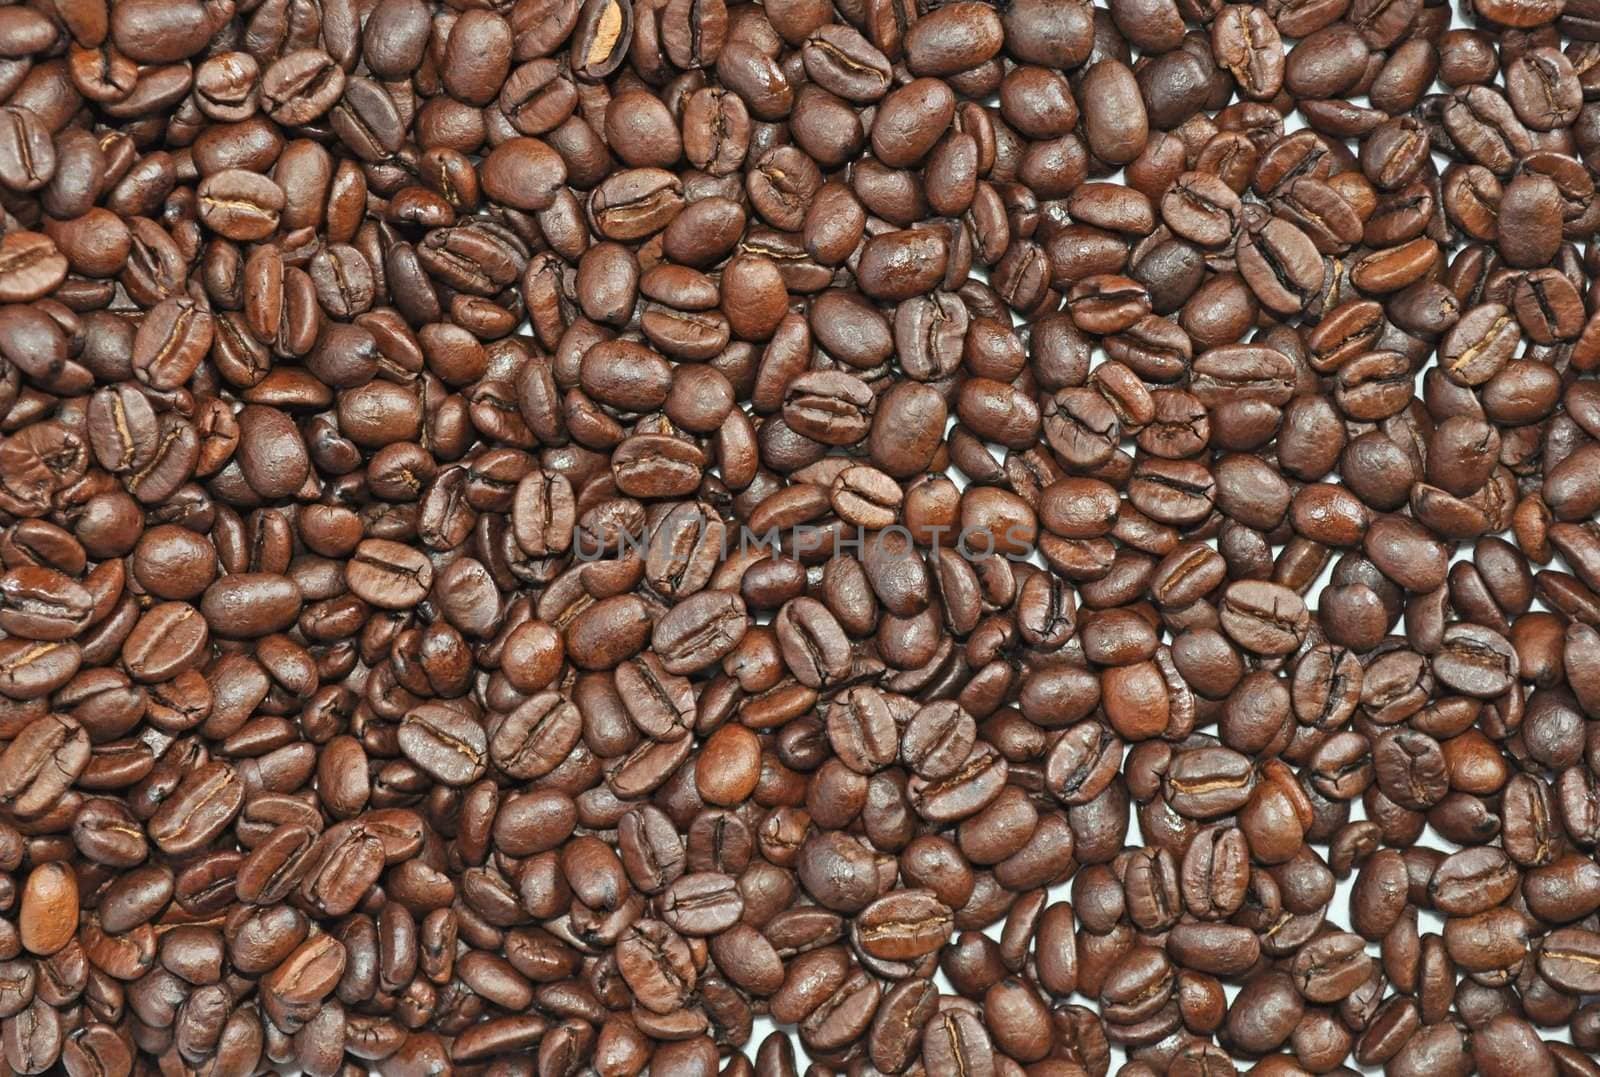 Many grains of Arab coffee